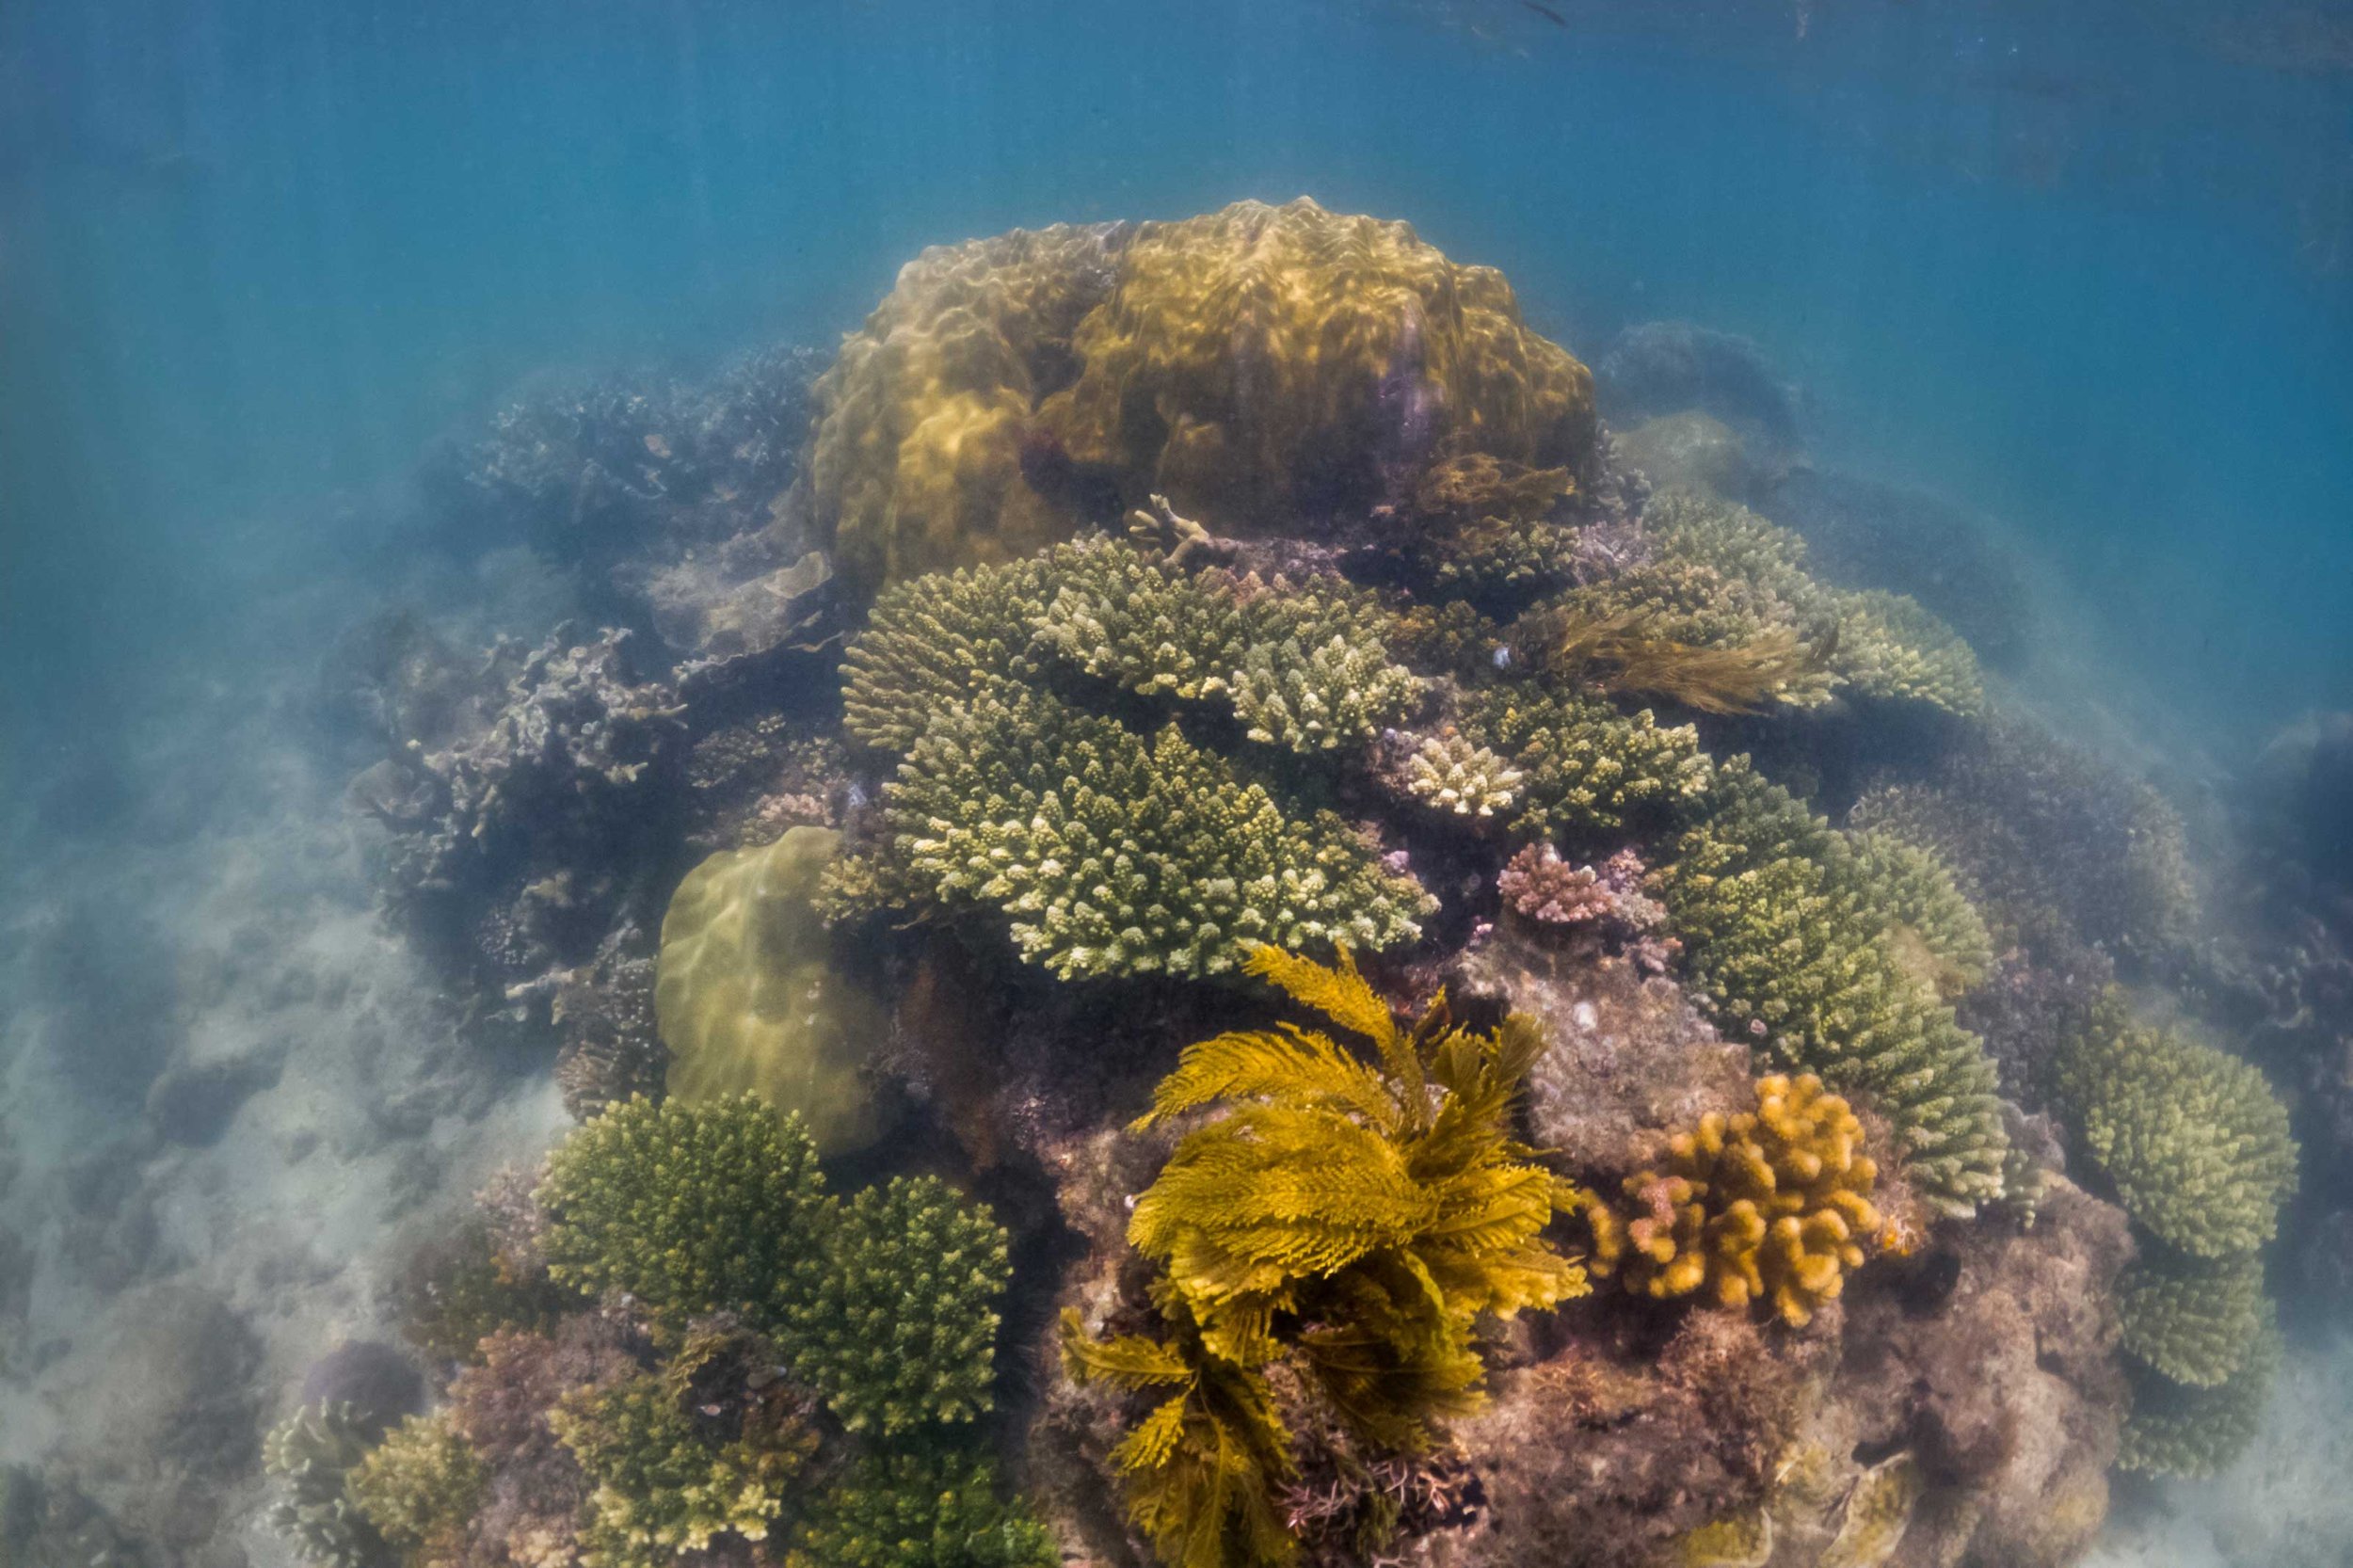 Reef,-Stephanie-Foote-Reefolution-GOPR0857.jpg